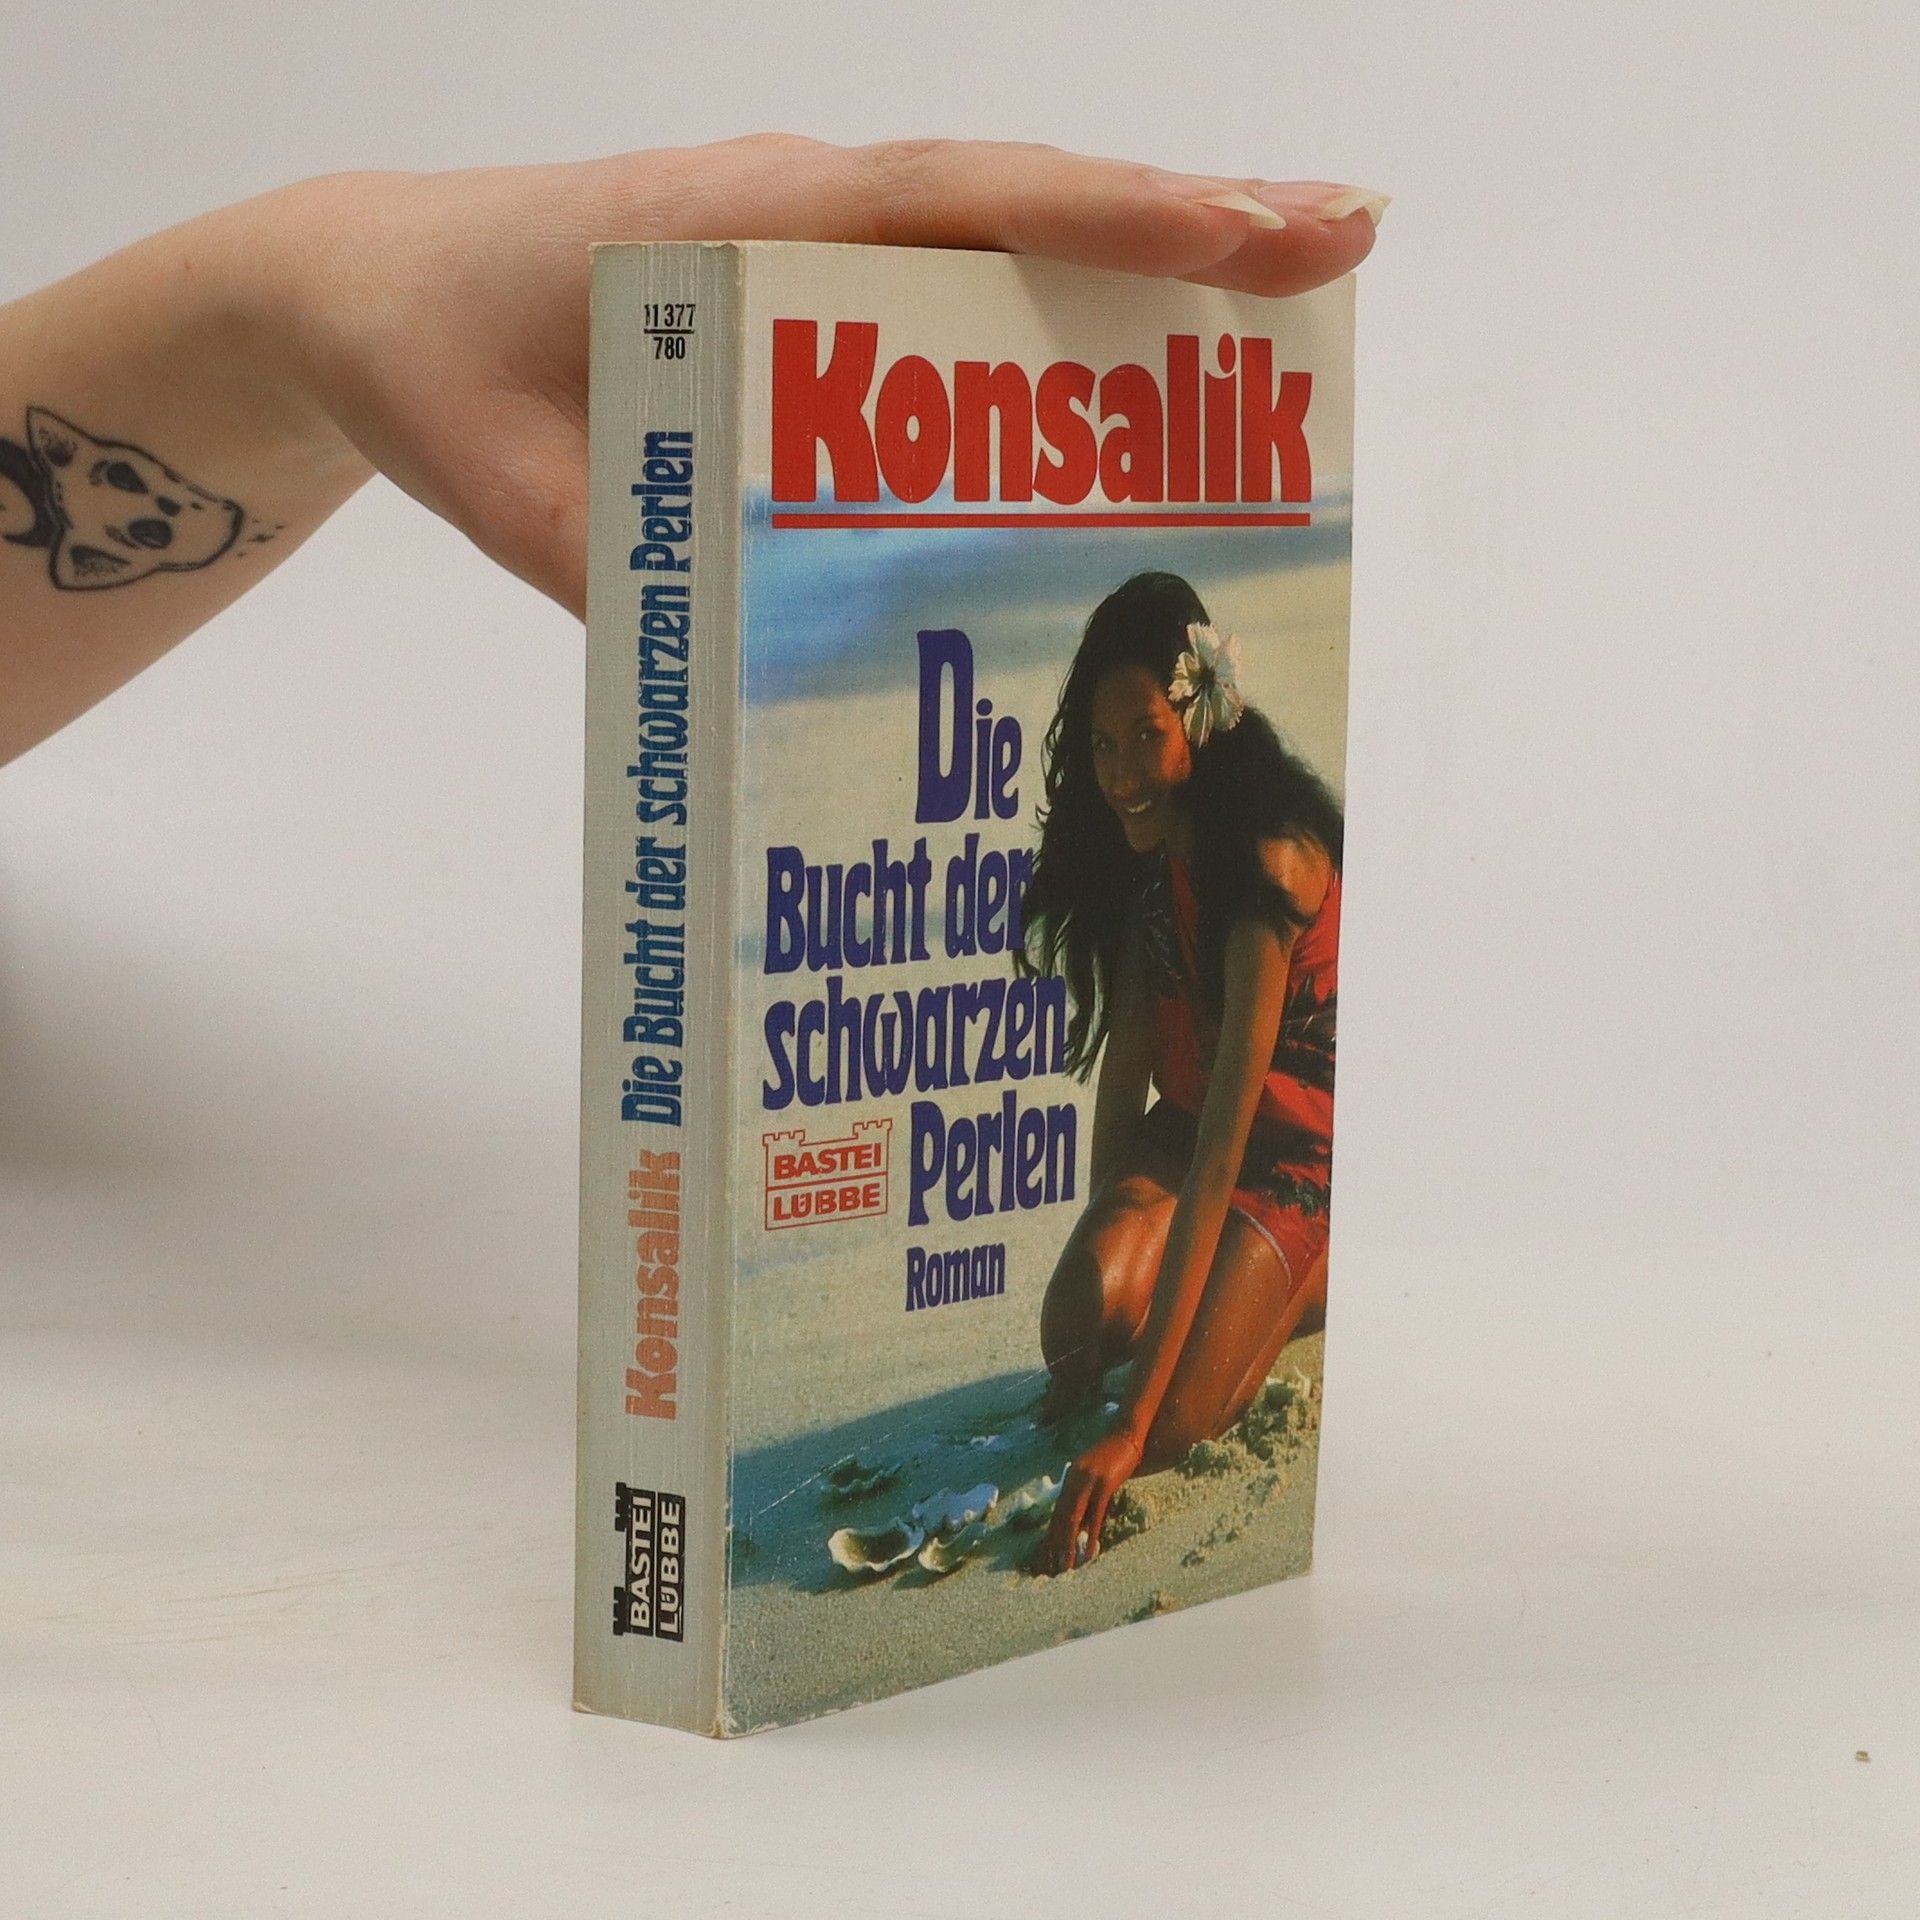 Die Bucht der schwarzen Perlen - Heinz G. Konsalik